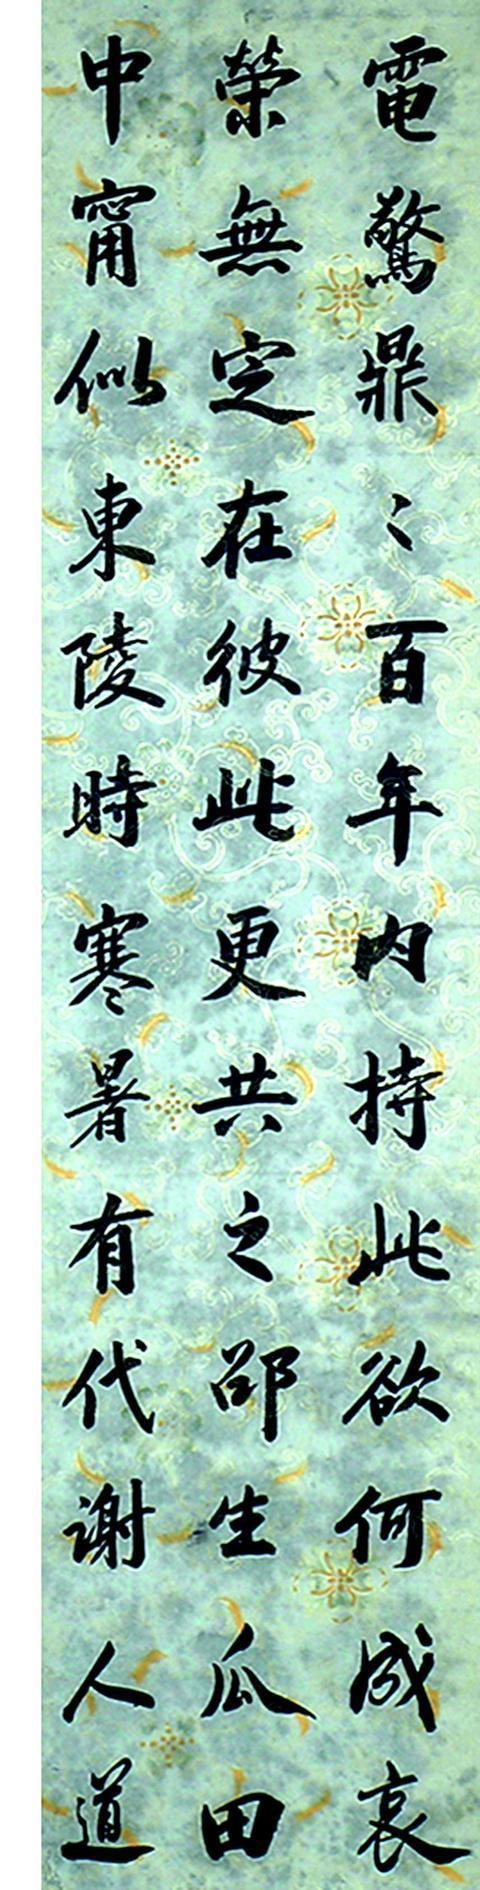 中国历史上最后一名状元、近代书画家刘春霖行书陶渊明《饮酒诗》